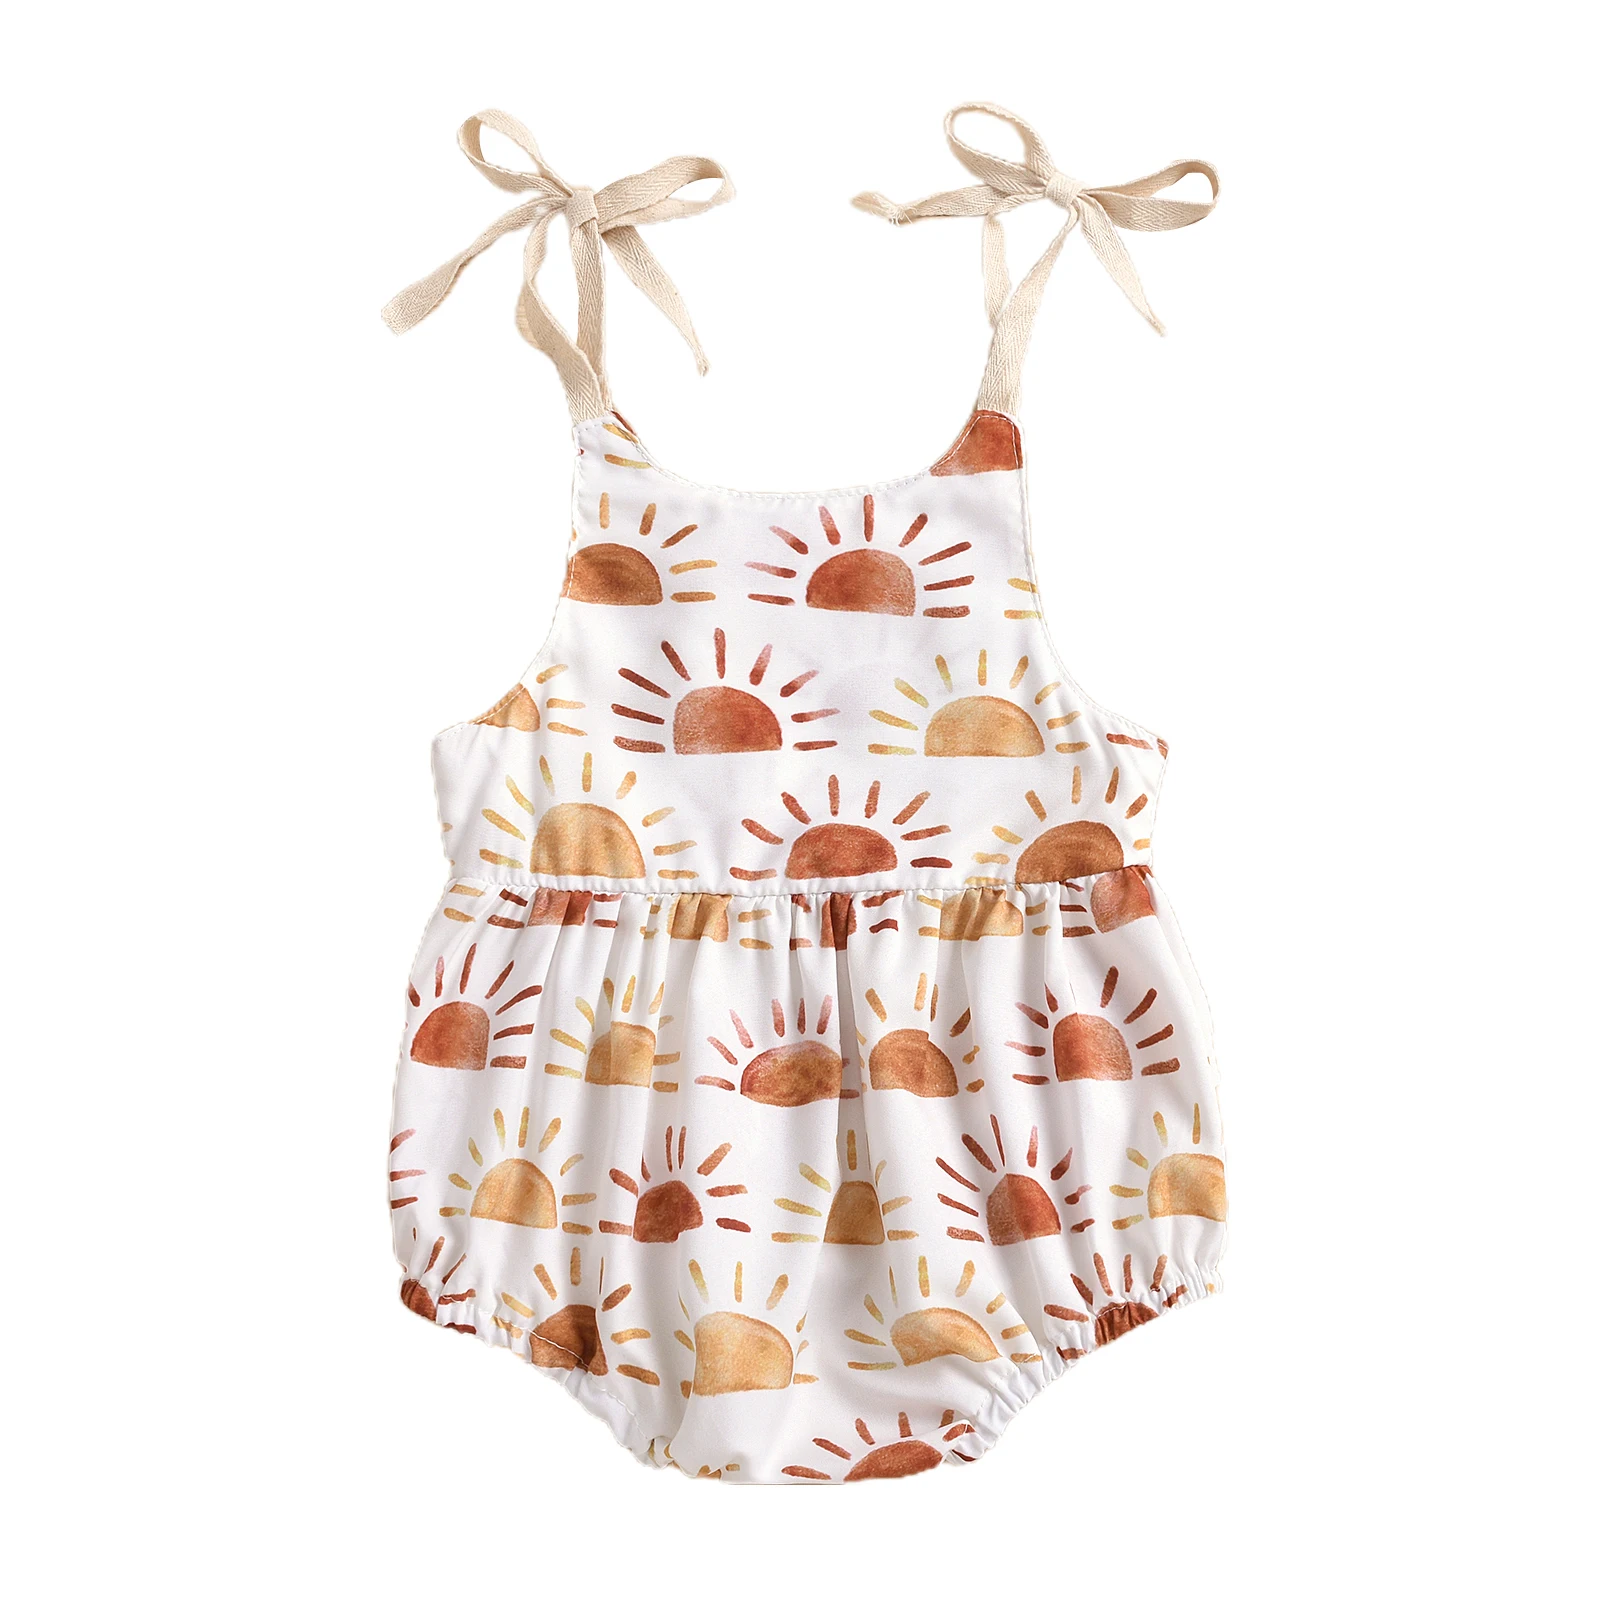 0-24M Newborn Infant Baby Girl Sun Sunflowe Print Sleeveless Romper Jumpsuit Summer Toddler Clothing Baby Bodysuits for girl 